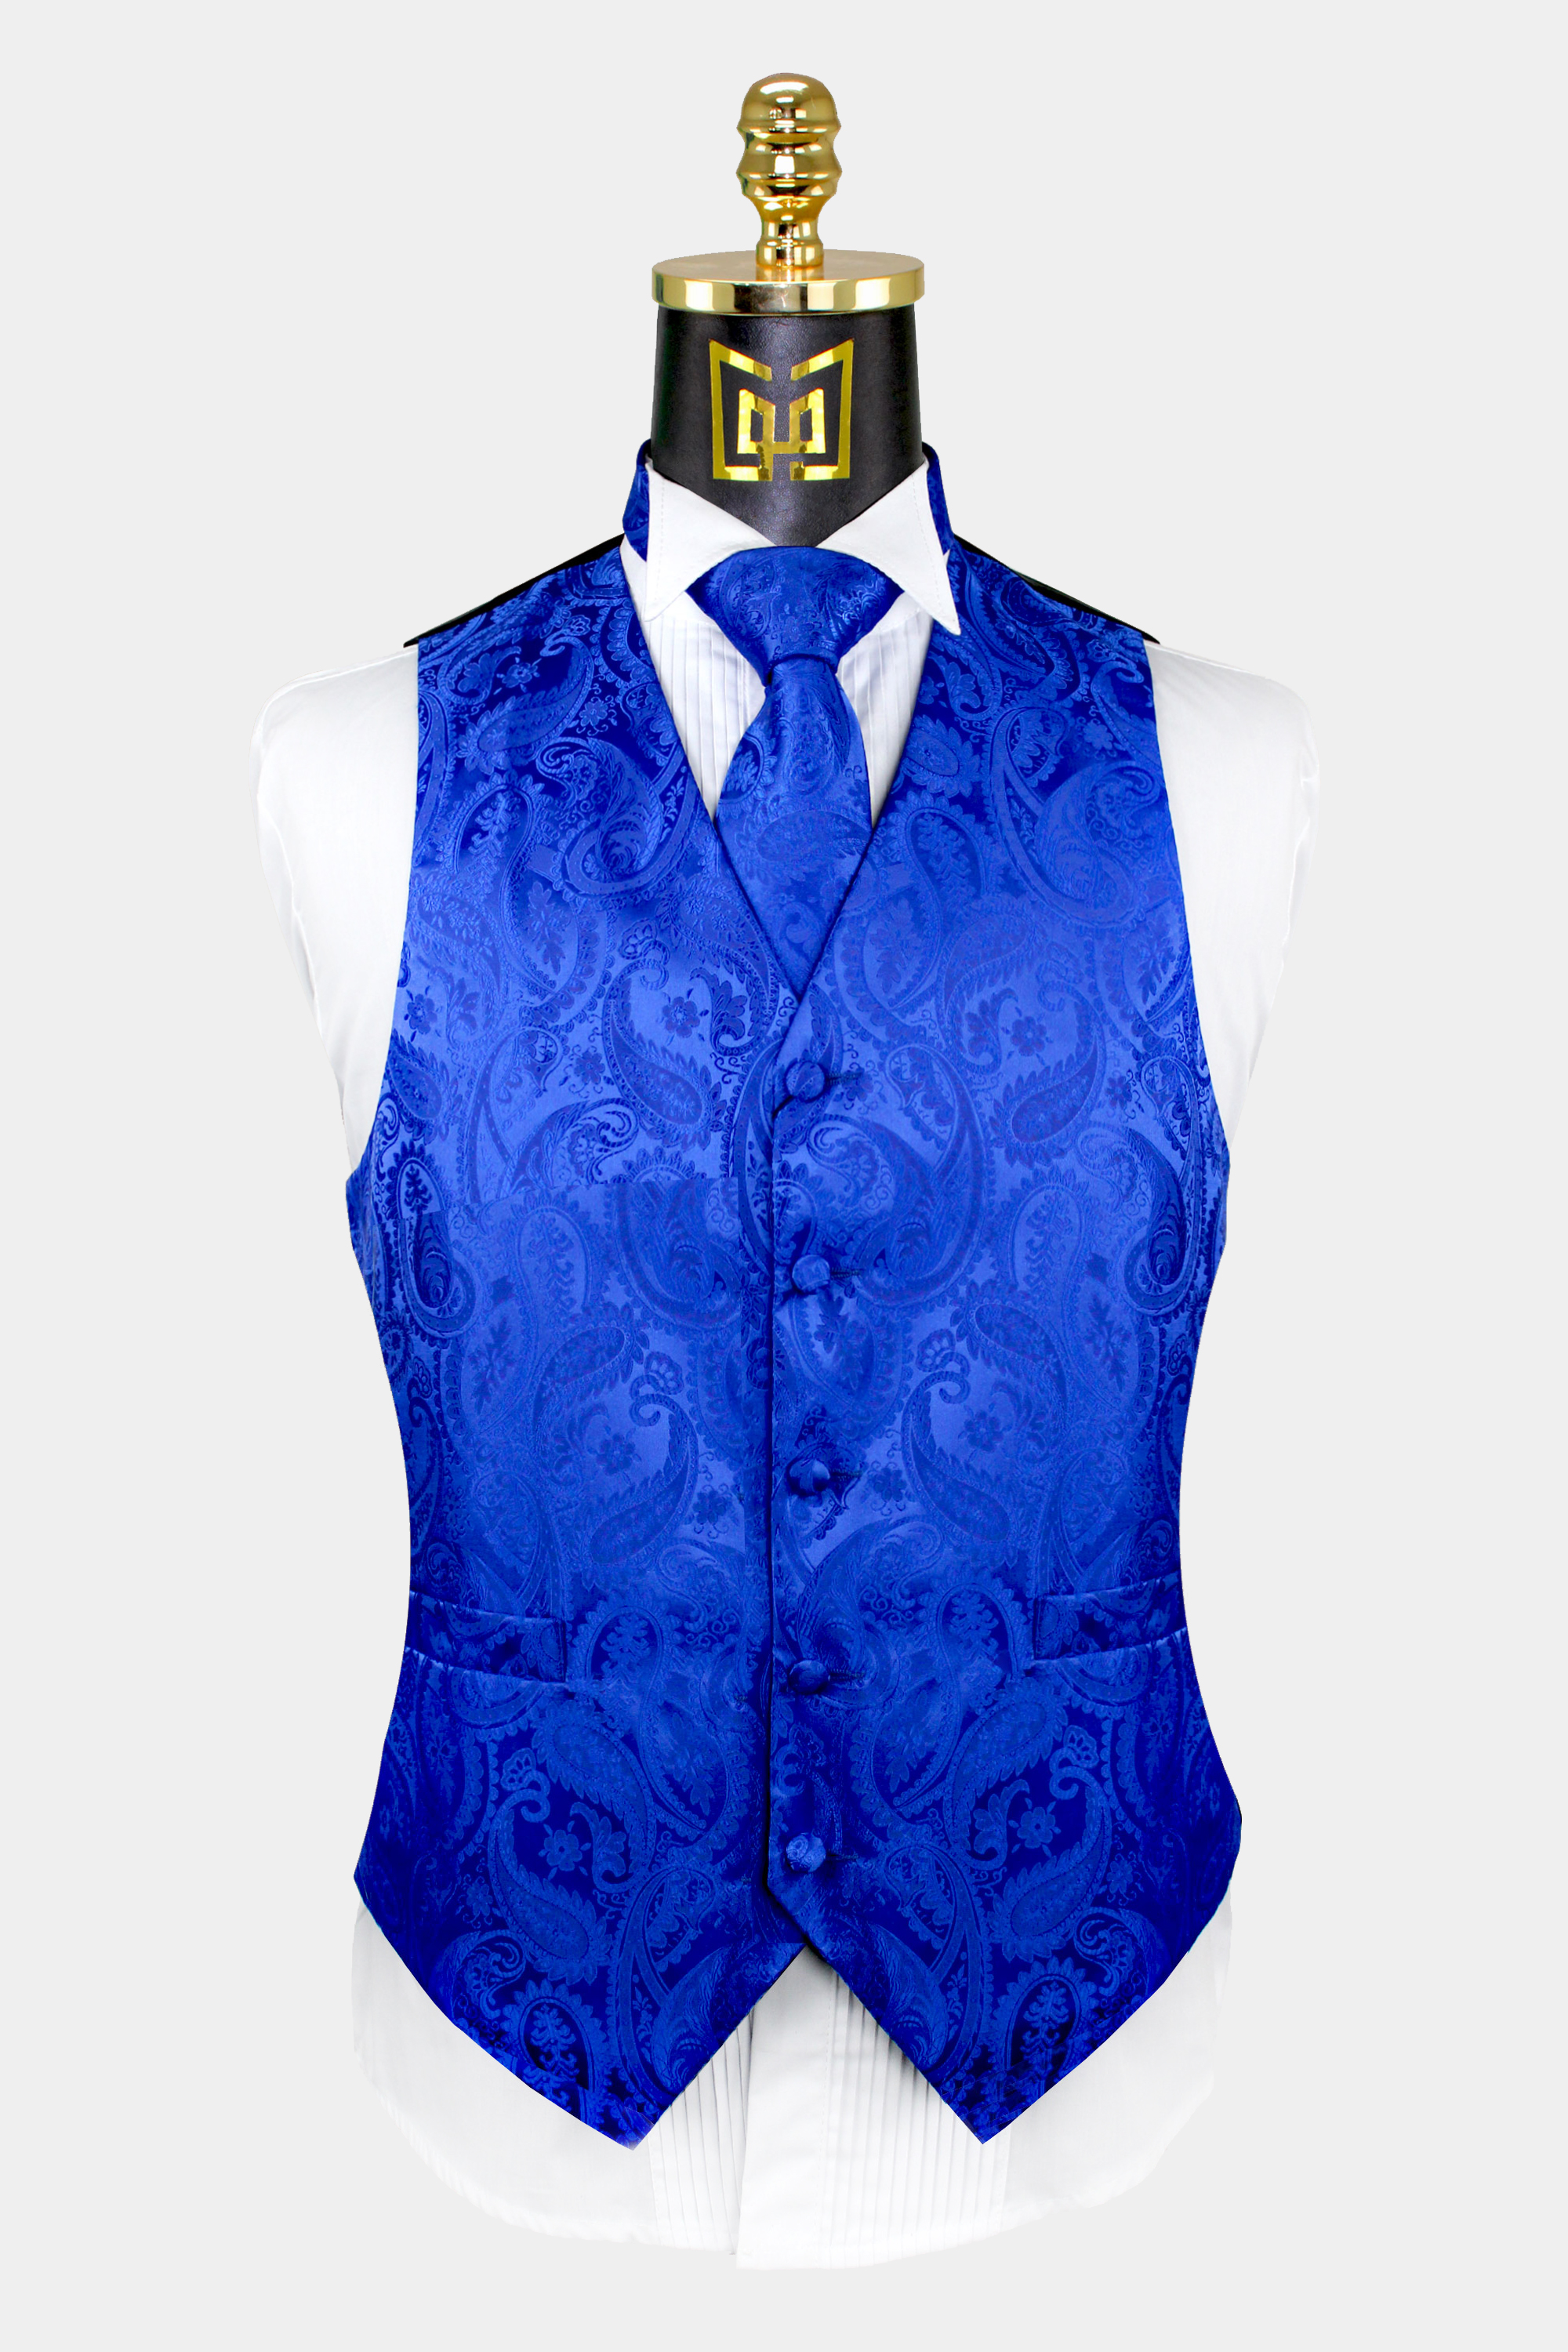 Royal Blue Paisley Vest & Tie Set - 3 Piece